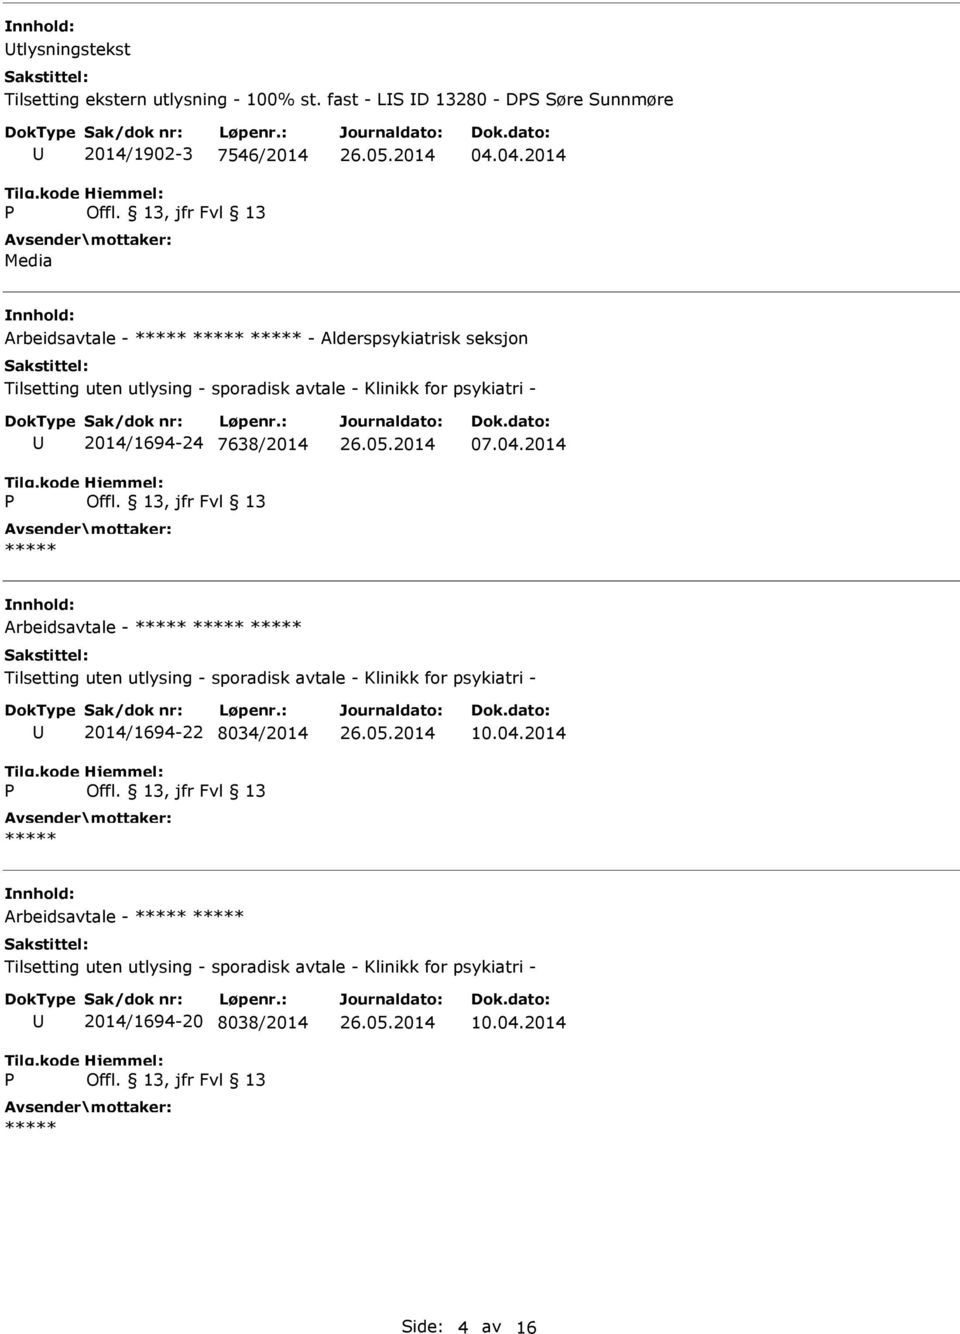 Arbeidsavtale - - Alderspsykiatrisk seksjon 2014/1694-24 7638/2014 07.04.